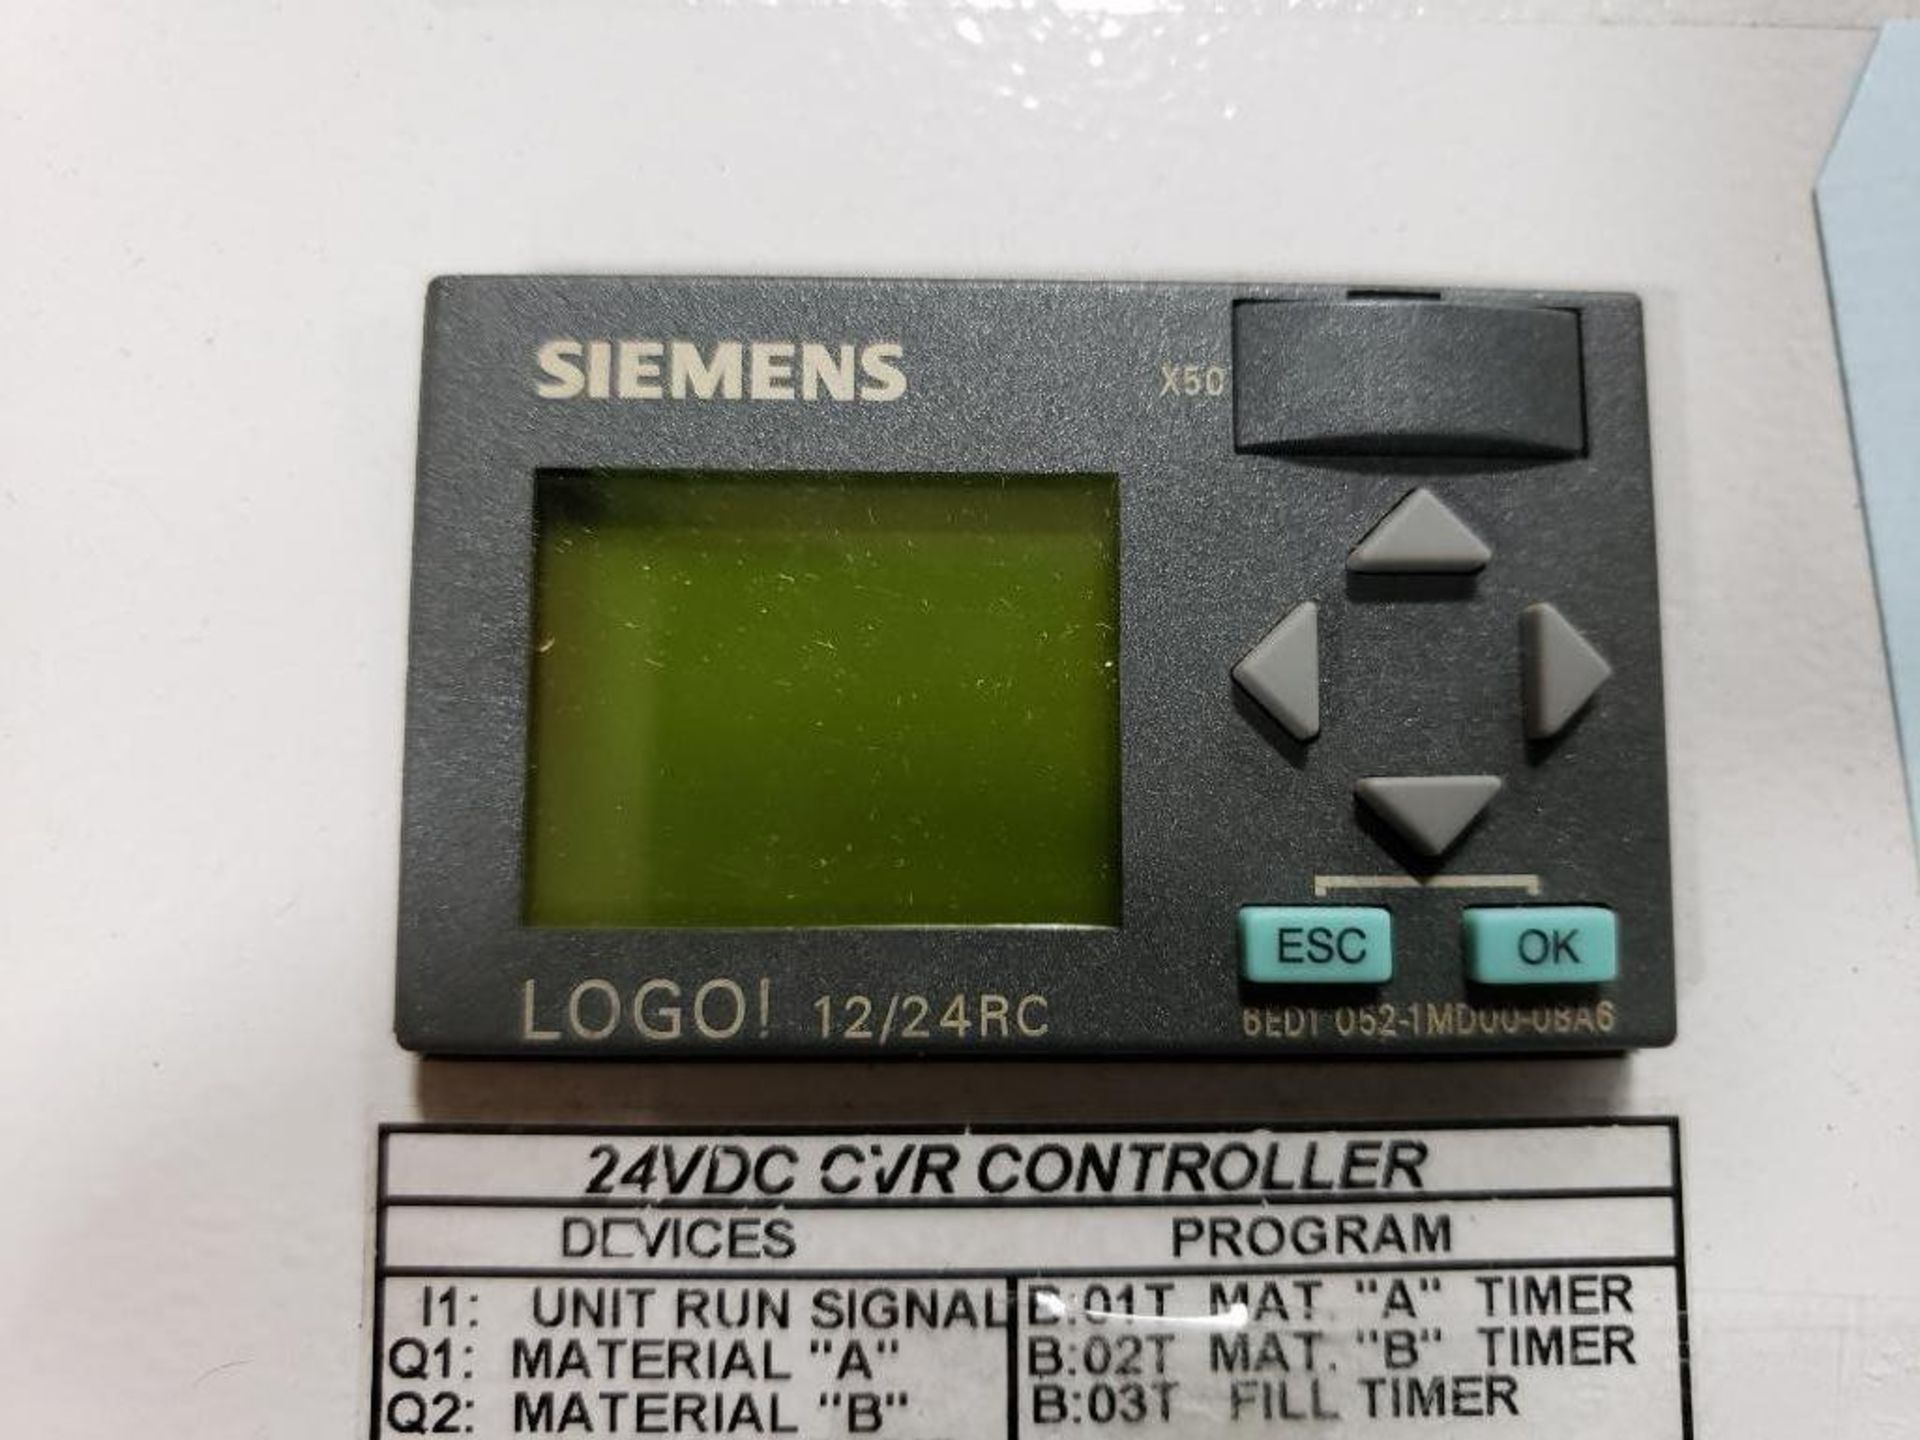 Wittmann 24VDC OVR controller. Siemens 8ED1 052-1MD00-0BA6. - Image 2 of 6